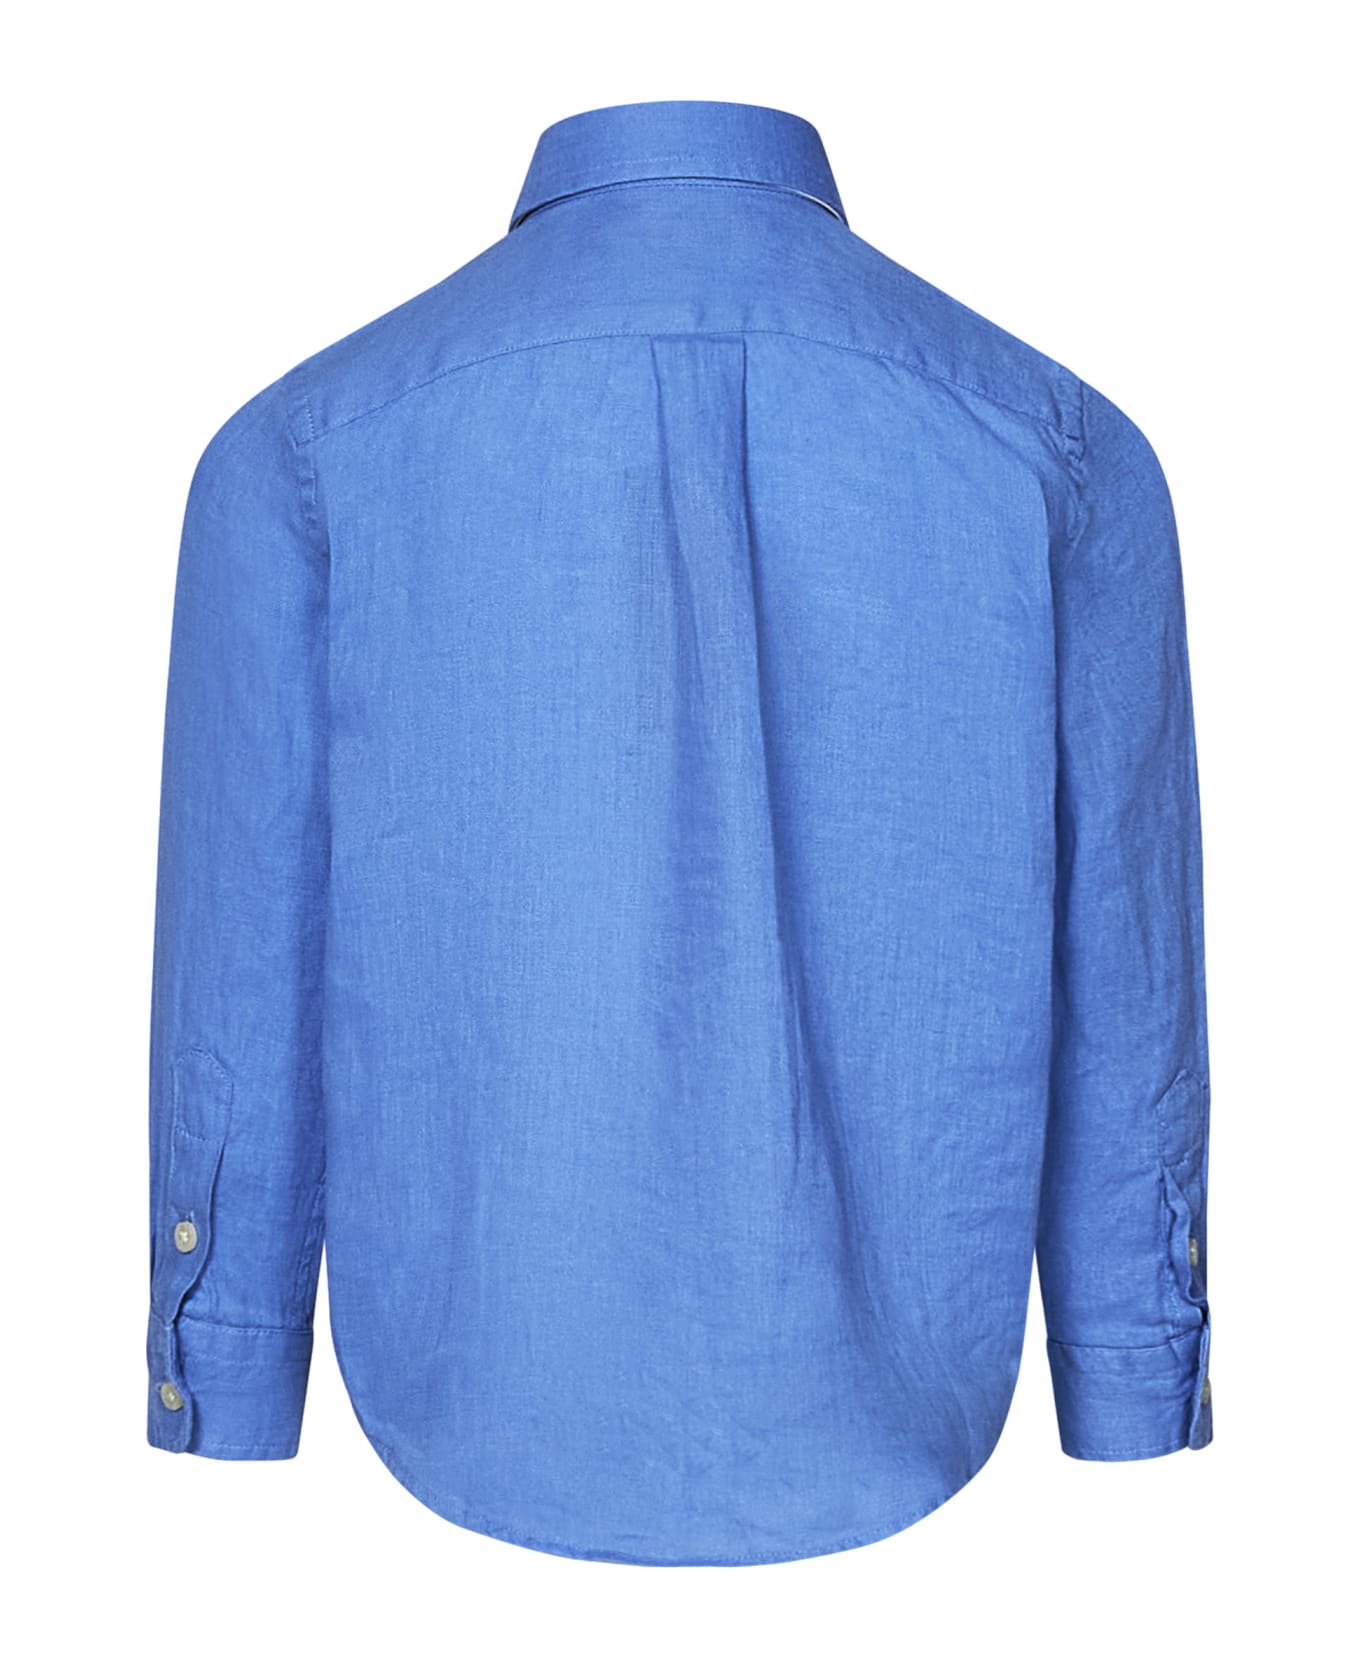 Polo Ralph Lauren Kids Shirt - Clear Blue シャツ